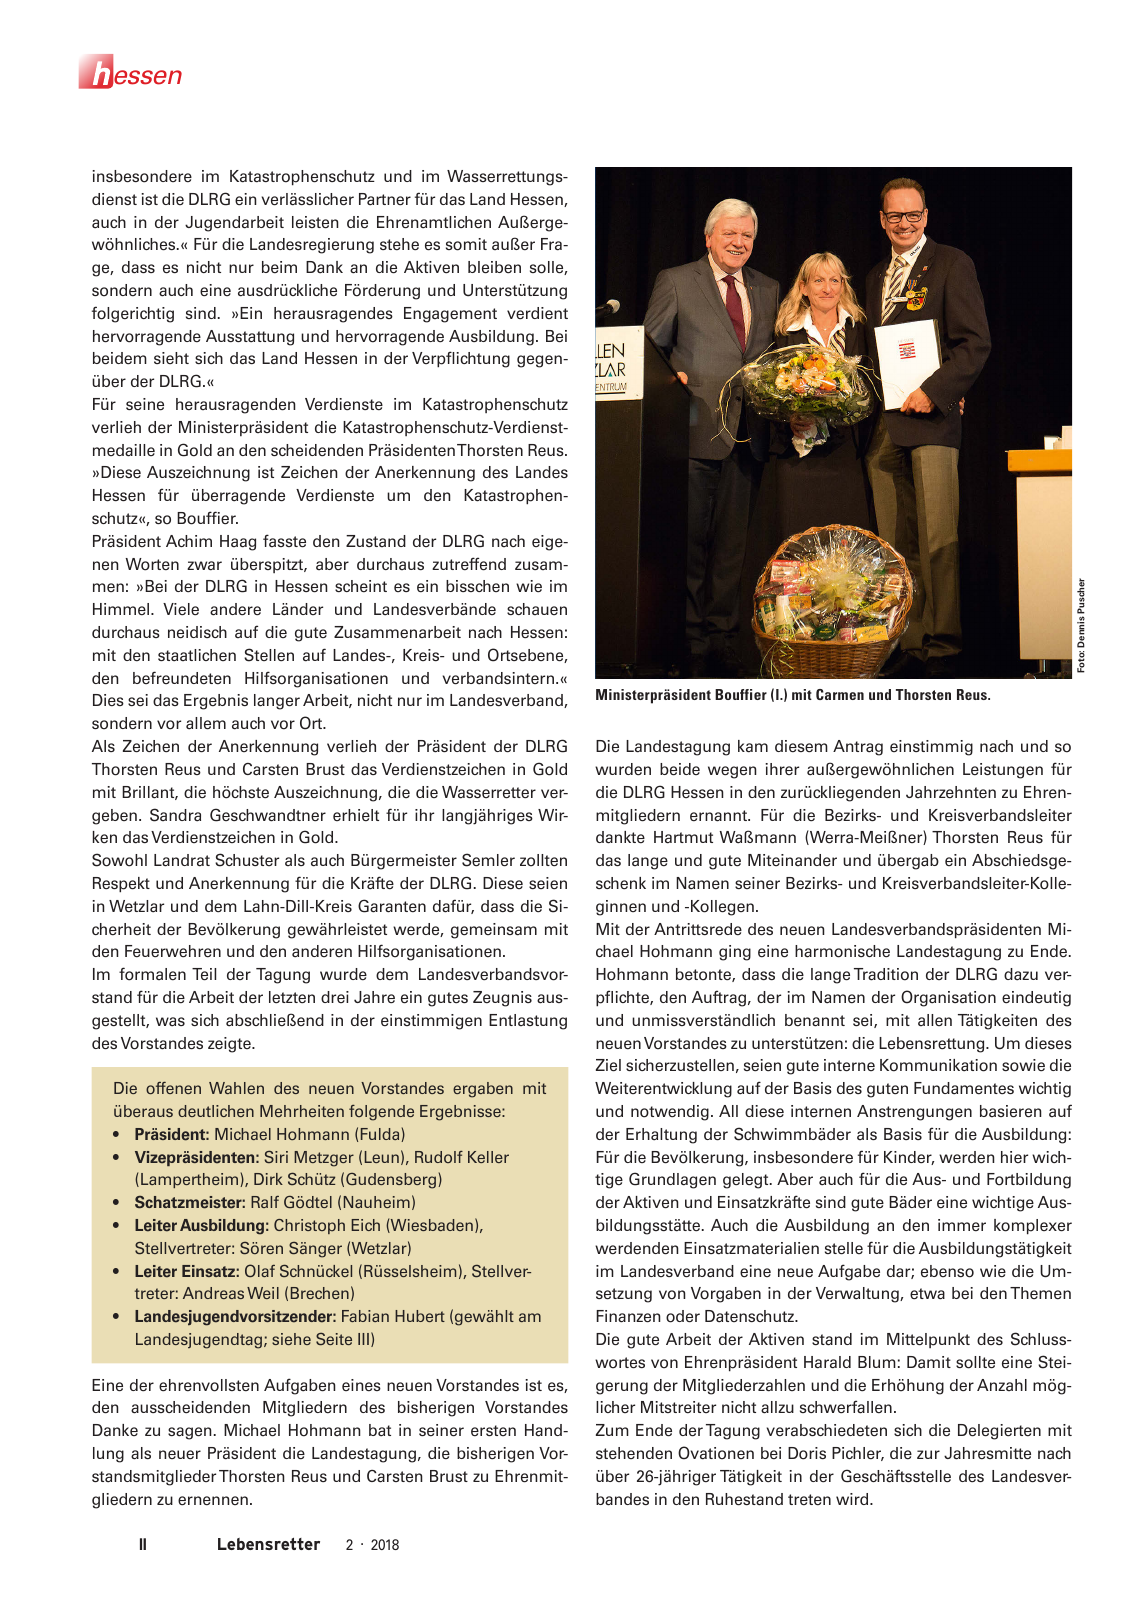 Vorschau Lebensretter 2/2018 - Regionalausgabe Hessen Seite 4